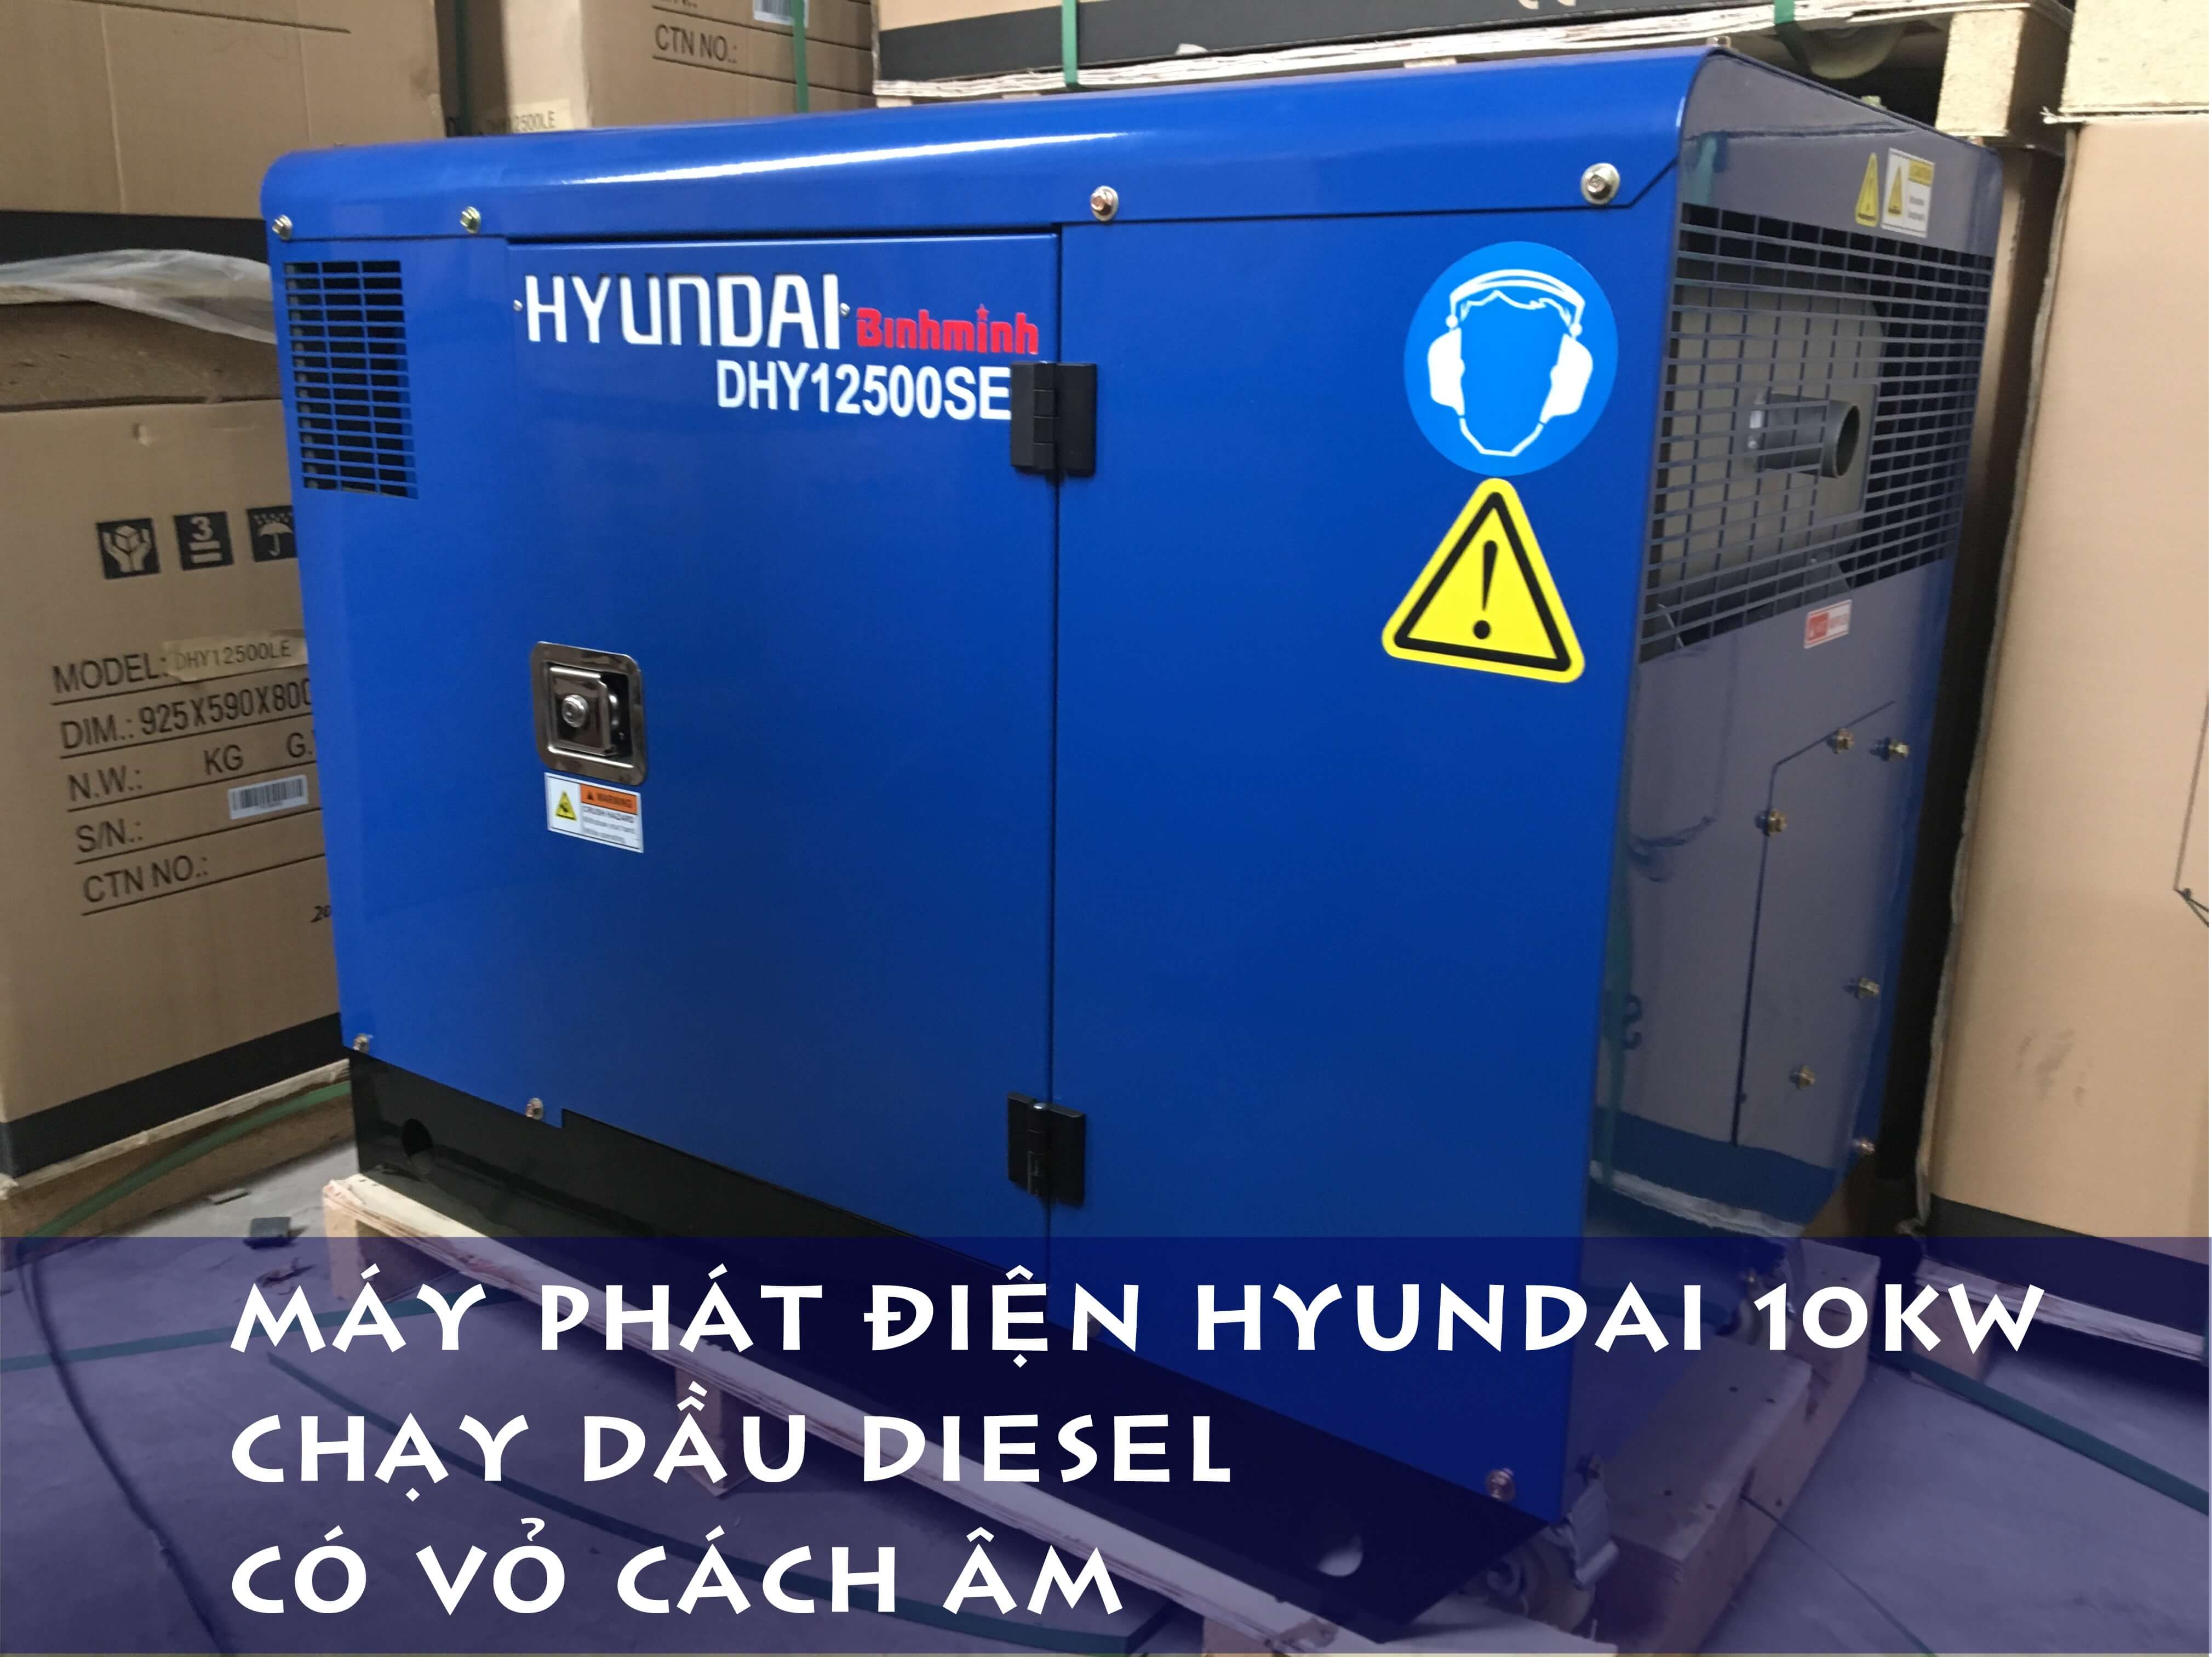 Máy phát điện Hyundai 10kw lắp đặt tại tỉnh Bà Rịa Vũng Tàu